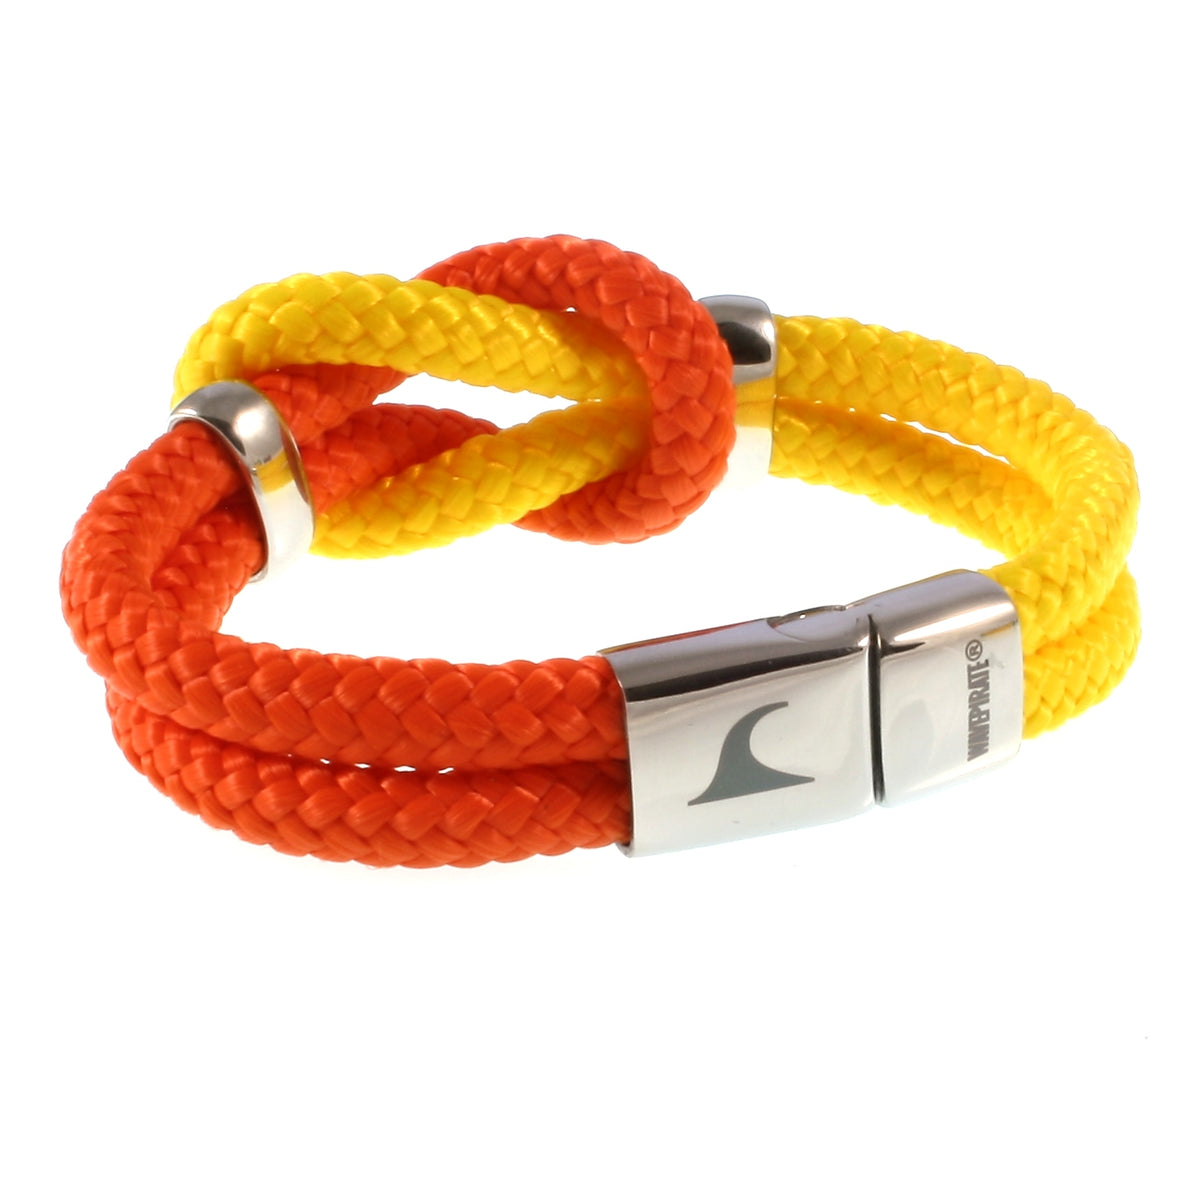 Damen-Segeltau-armband-pure-orange-gelb-silber-geflochten-Edelstahlverschluss-hinten-wavepirate-shop-st